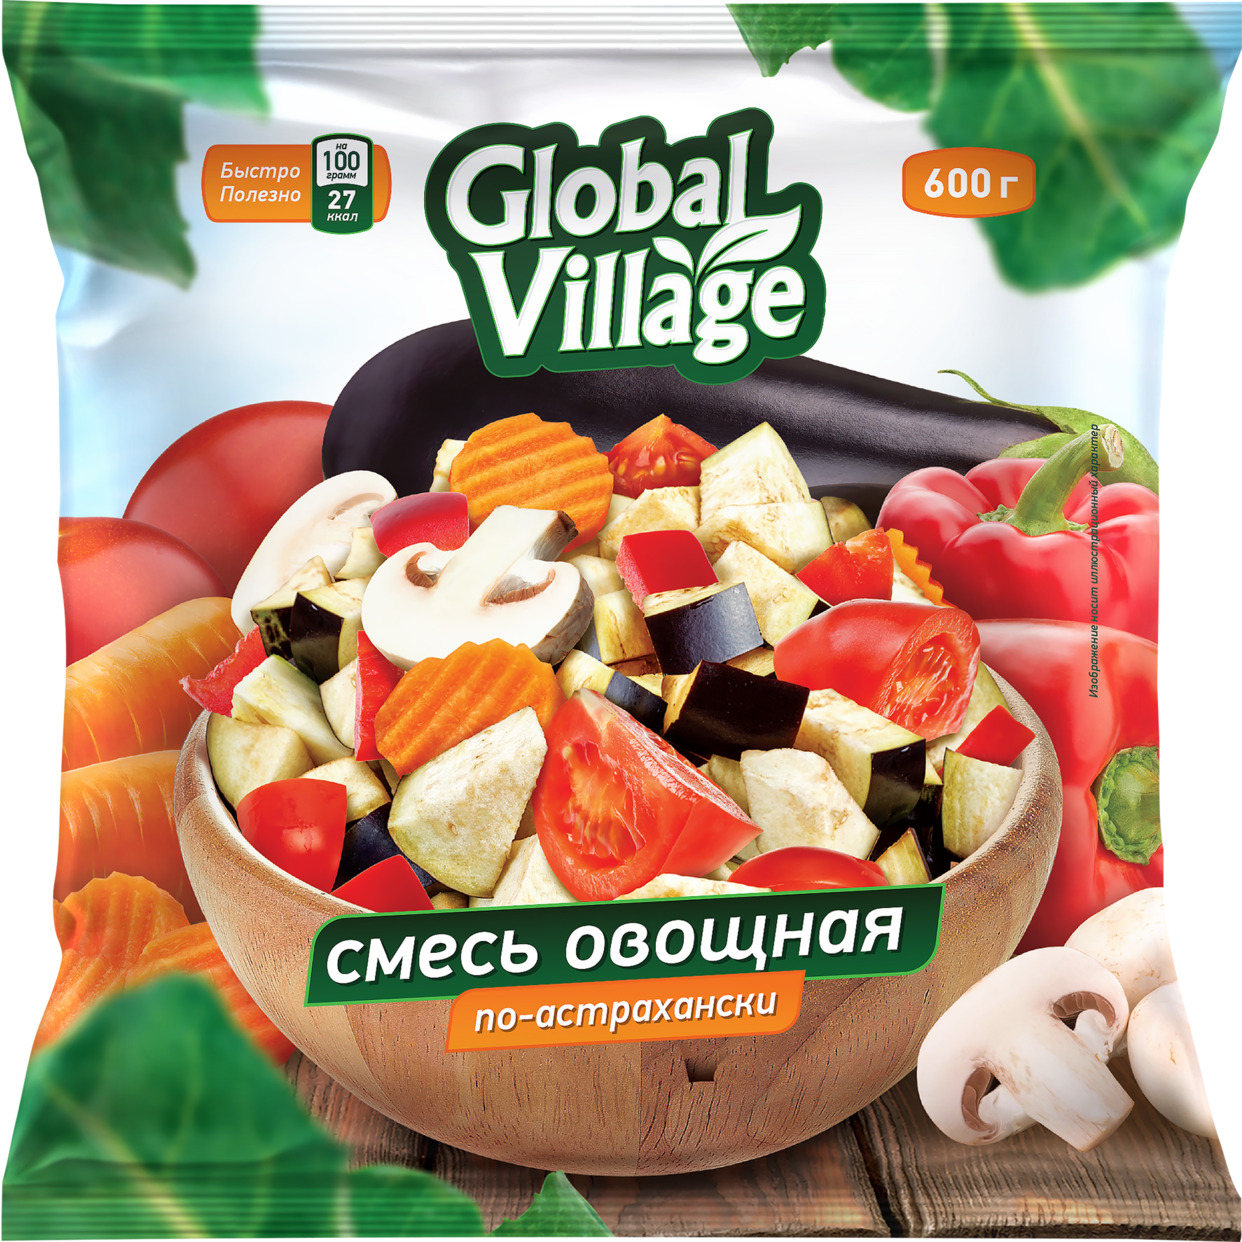 Global village Смесь овощная быстрозамороженная «По-астрахански» 600 г по акции в Пятерочке